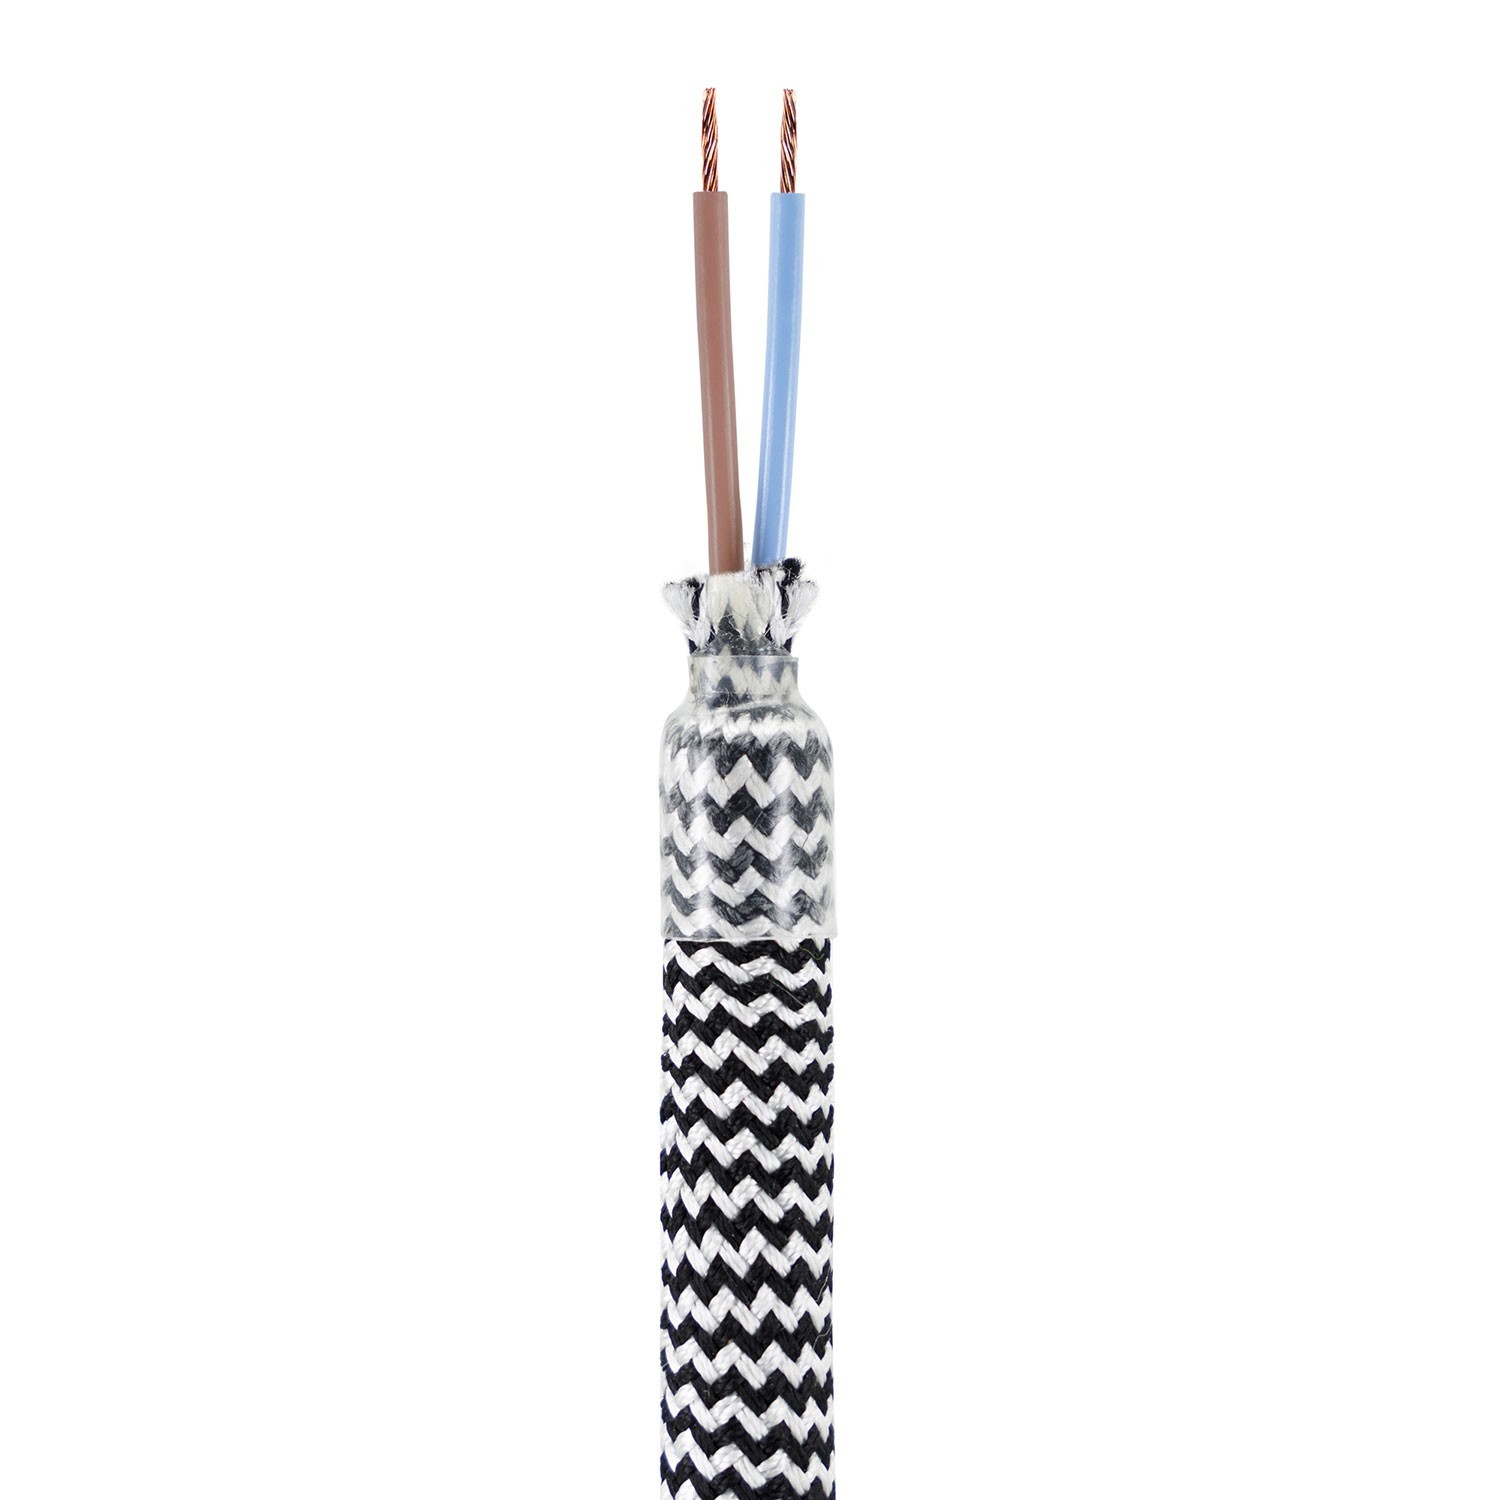 Creative Flex készlet rugalmas csővel, Fekete-fehér RZ04 szövet borítással, fém csatlakozókkal